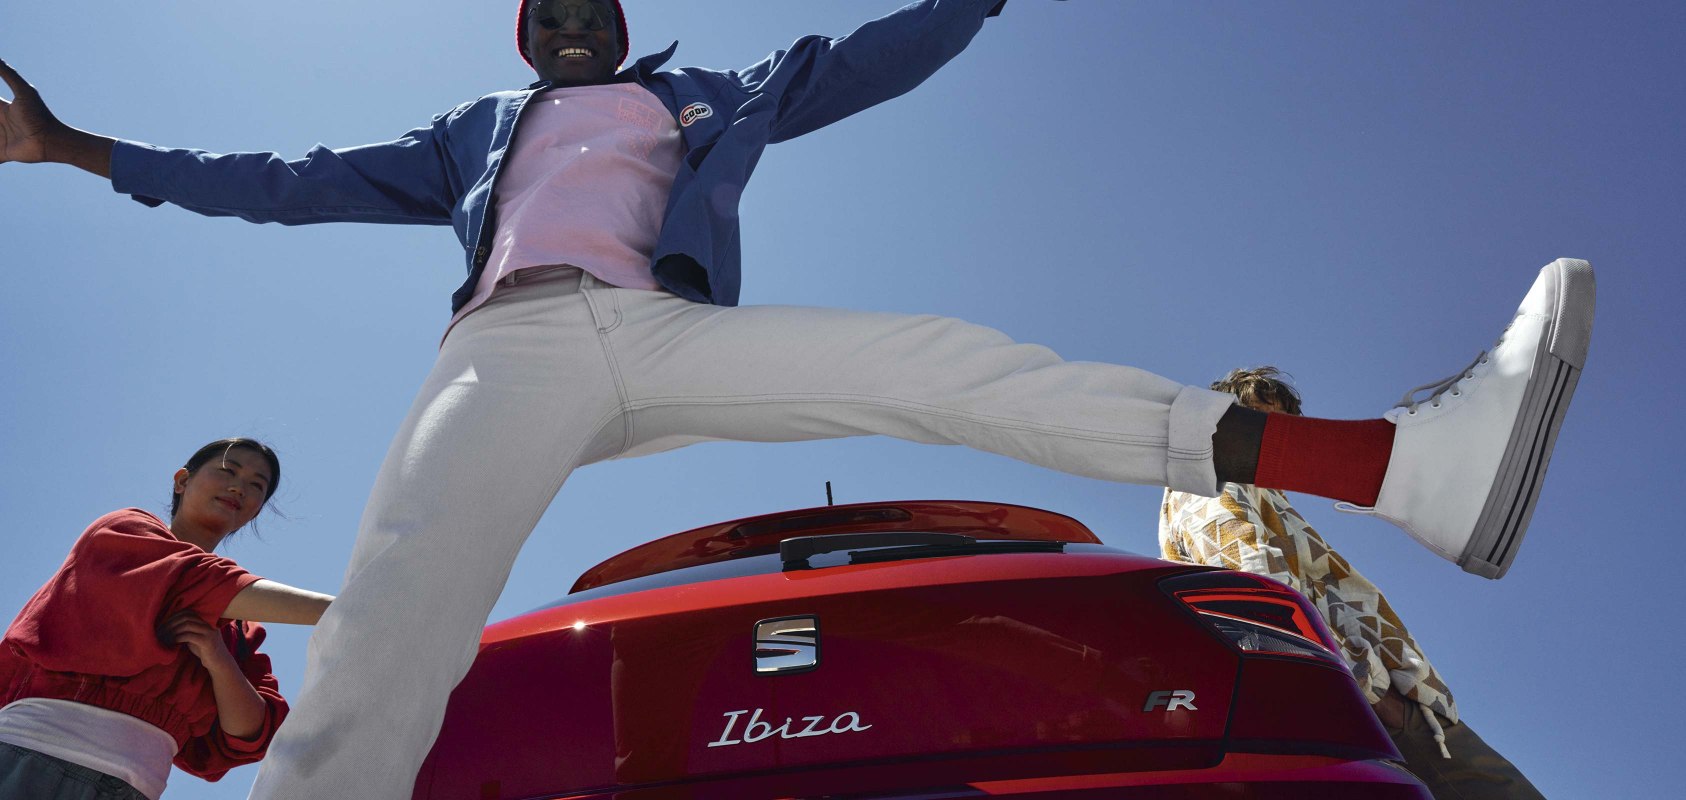 SEAT Ibiza FR color rojo deseo y personas saltando